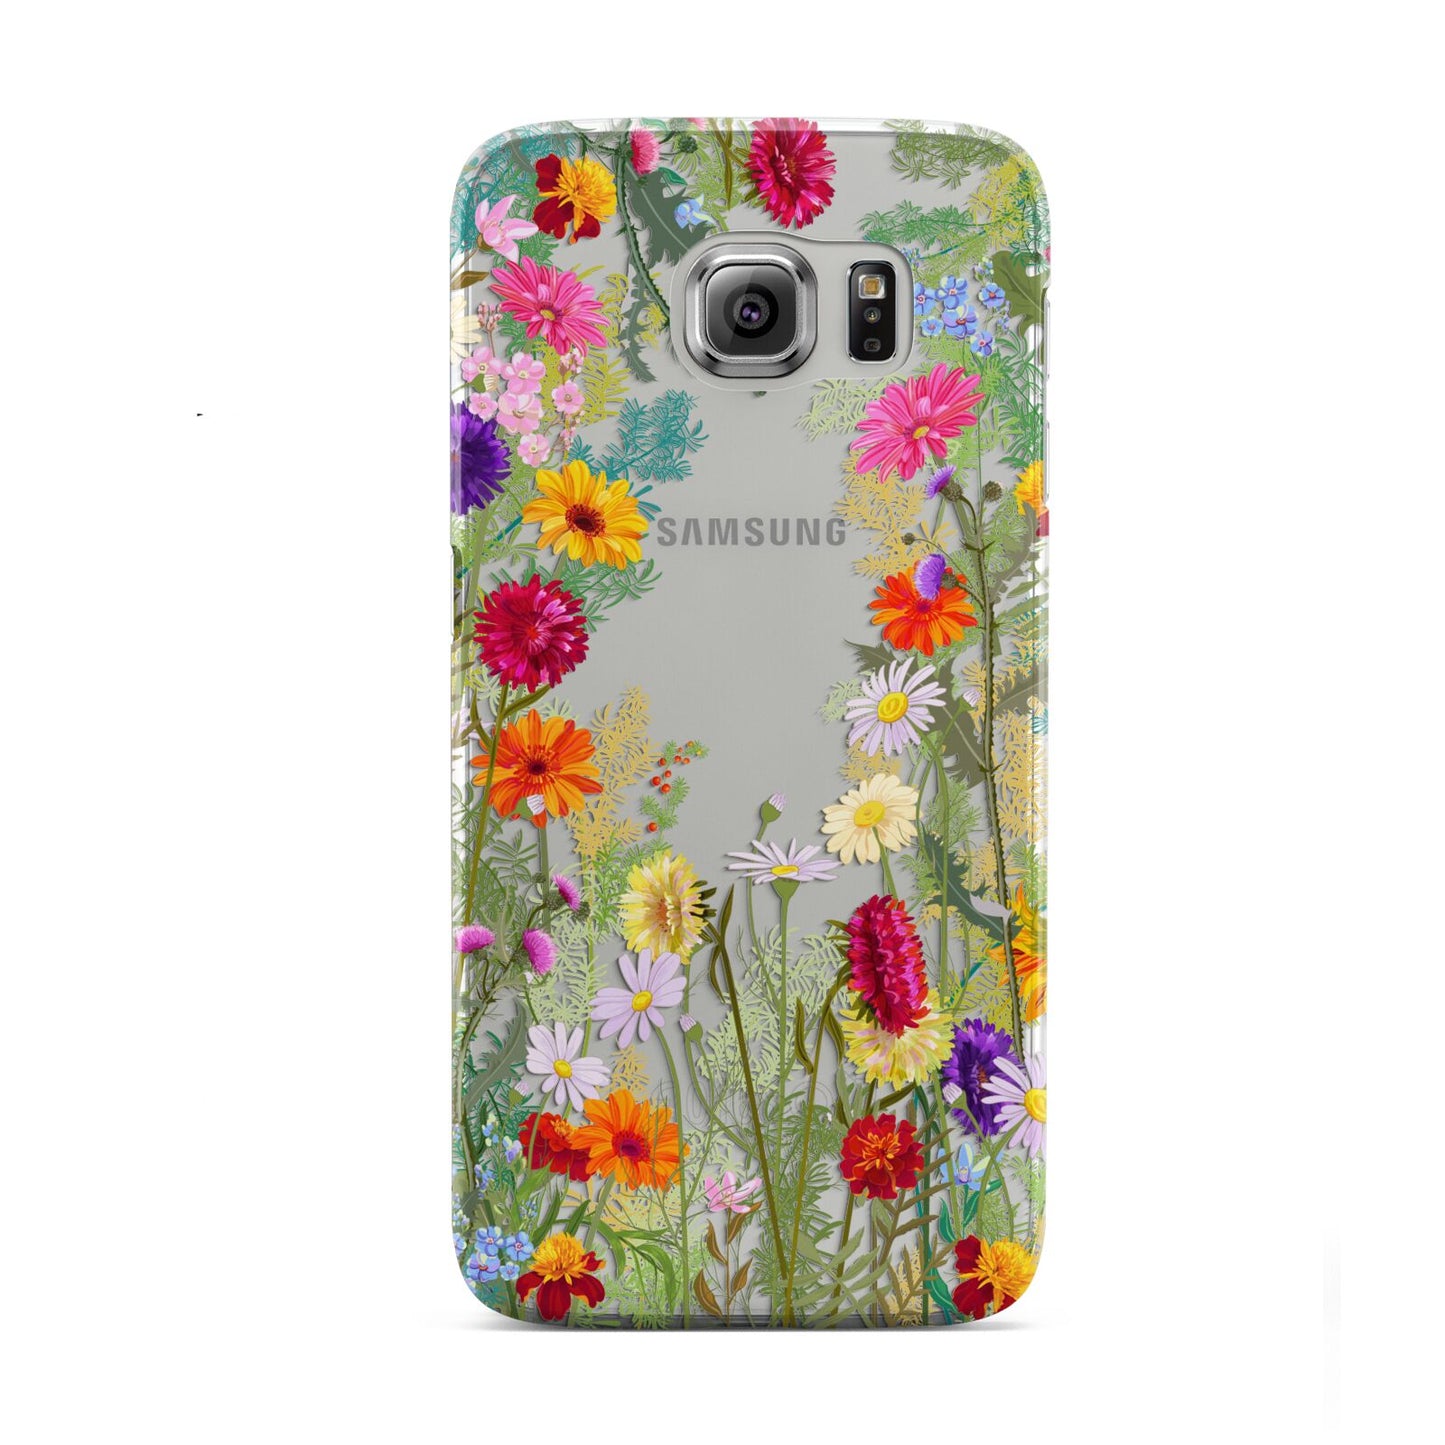 Wildflower Samsung Galaxy S6 Case